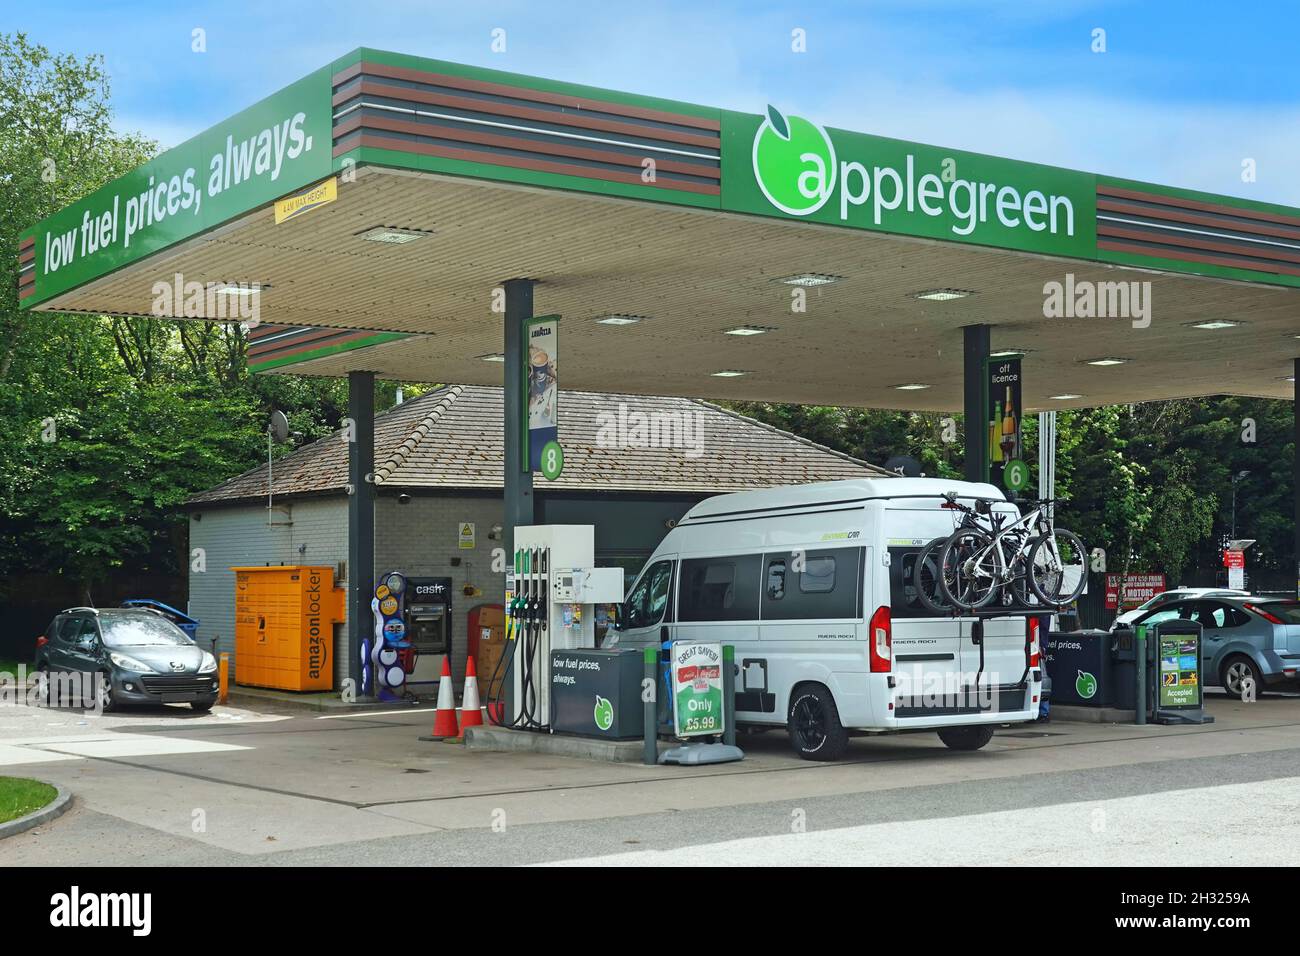 Logo benzina immagini e fotografie stock ad alta risoluzione - Alamy